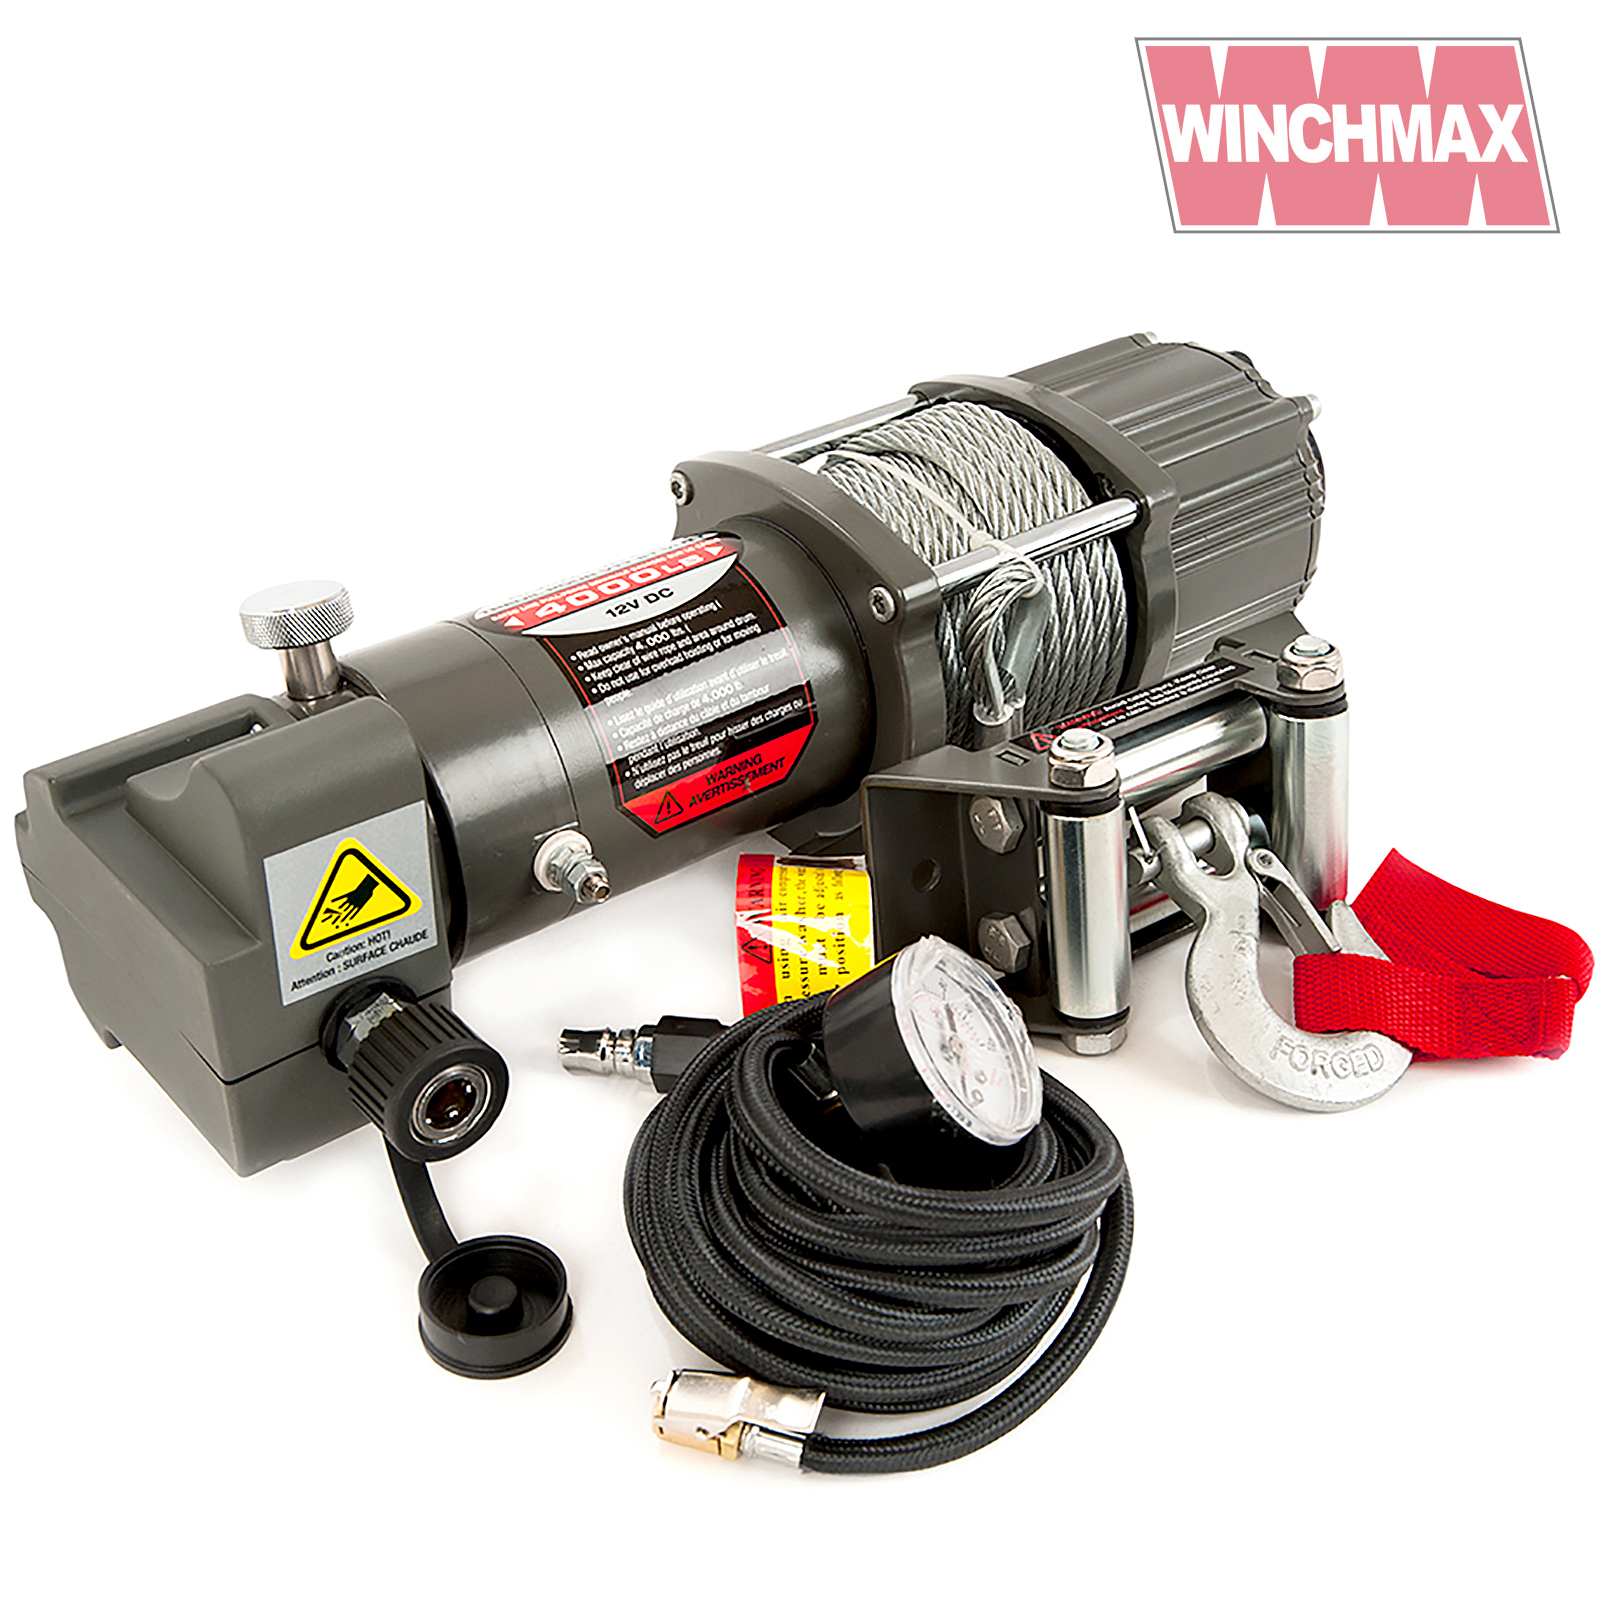 Winchmax 4,000lb Winch and Air Compressor